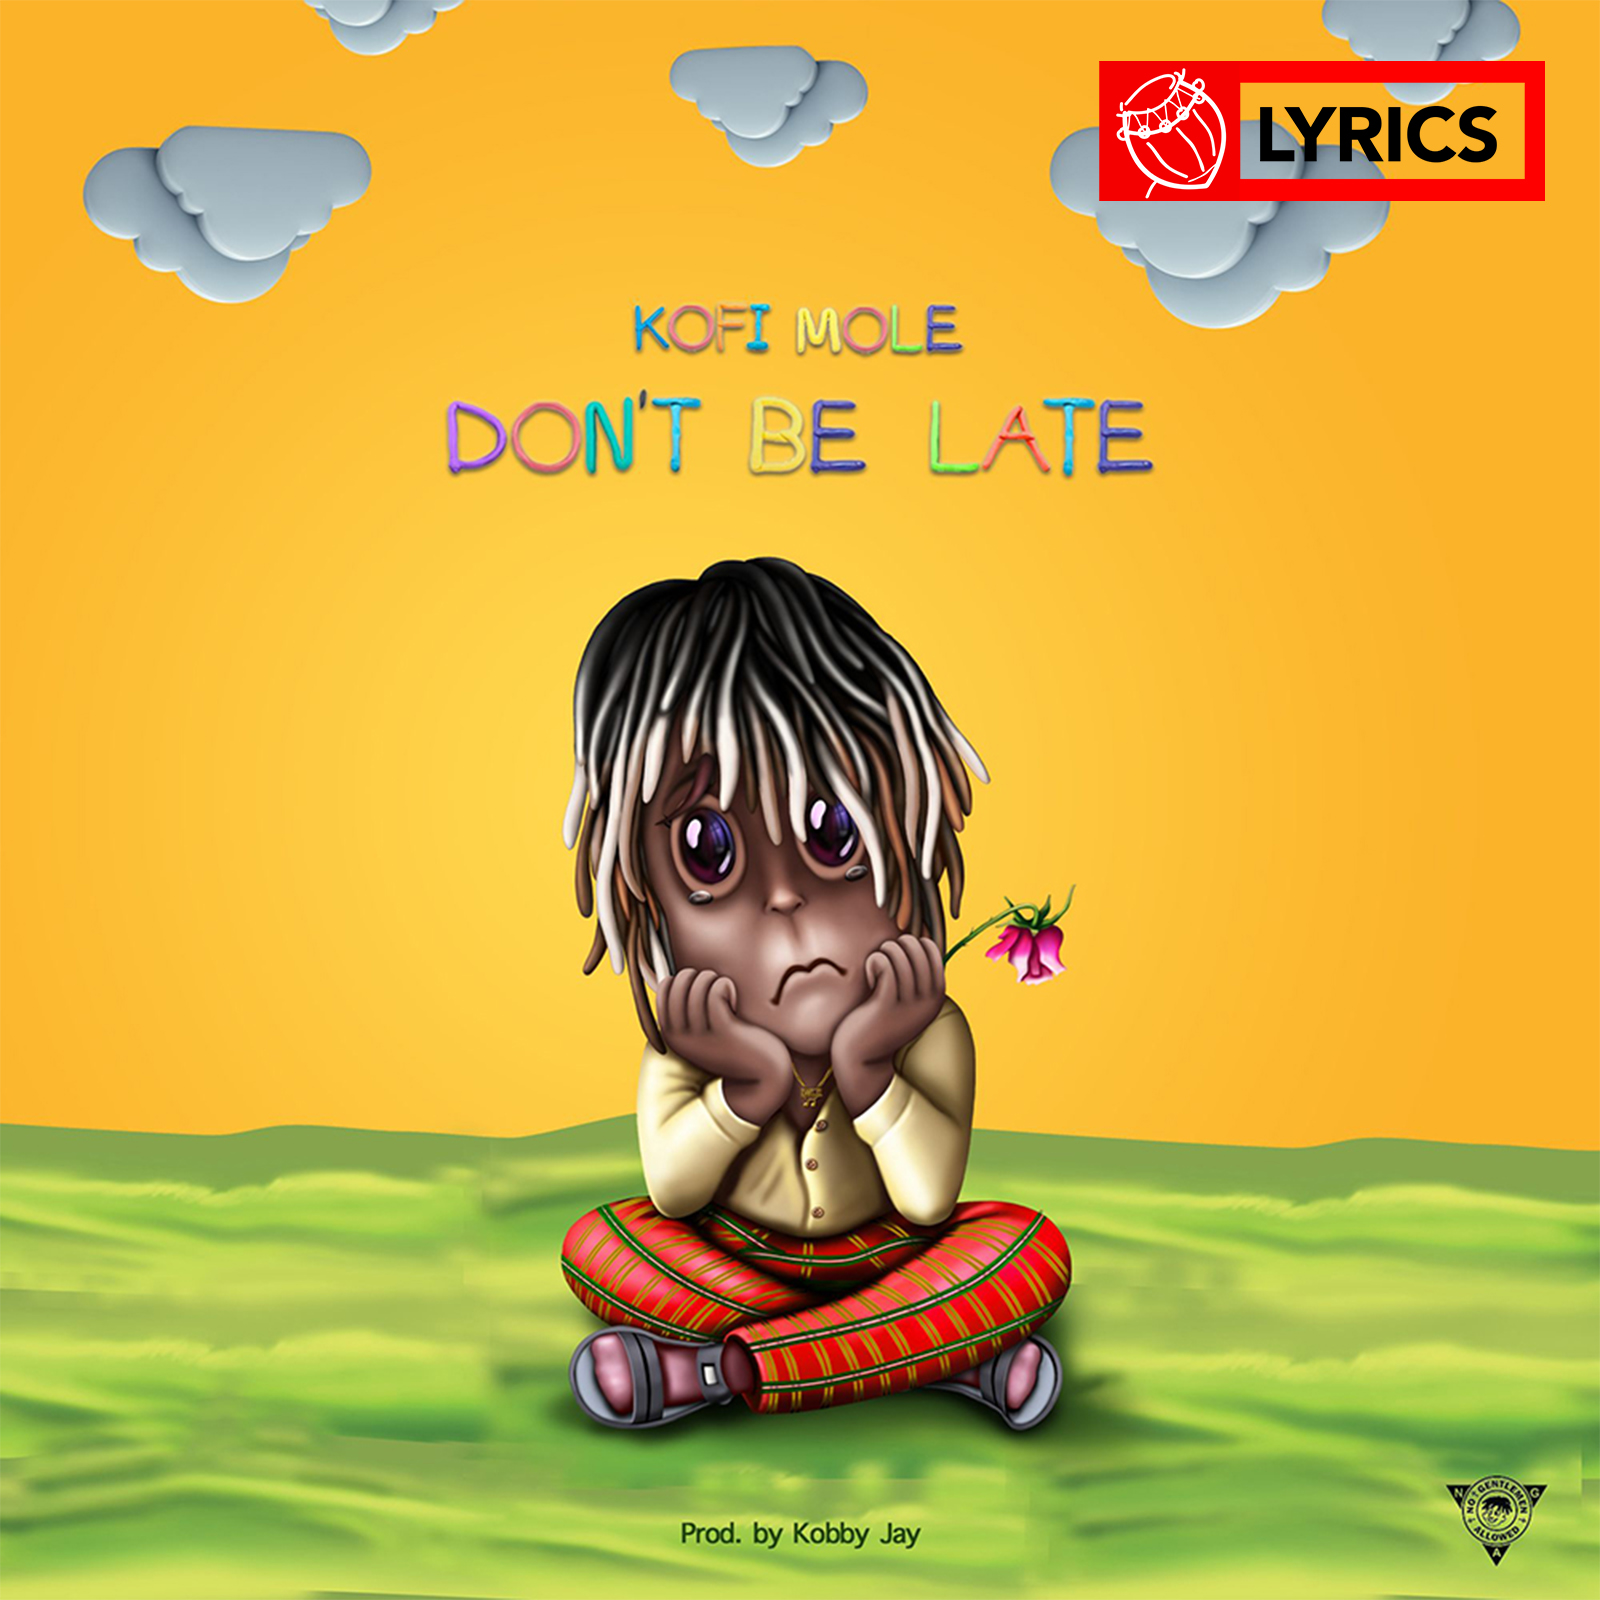 Lyrics: Don't Be Late by Kofi Mole